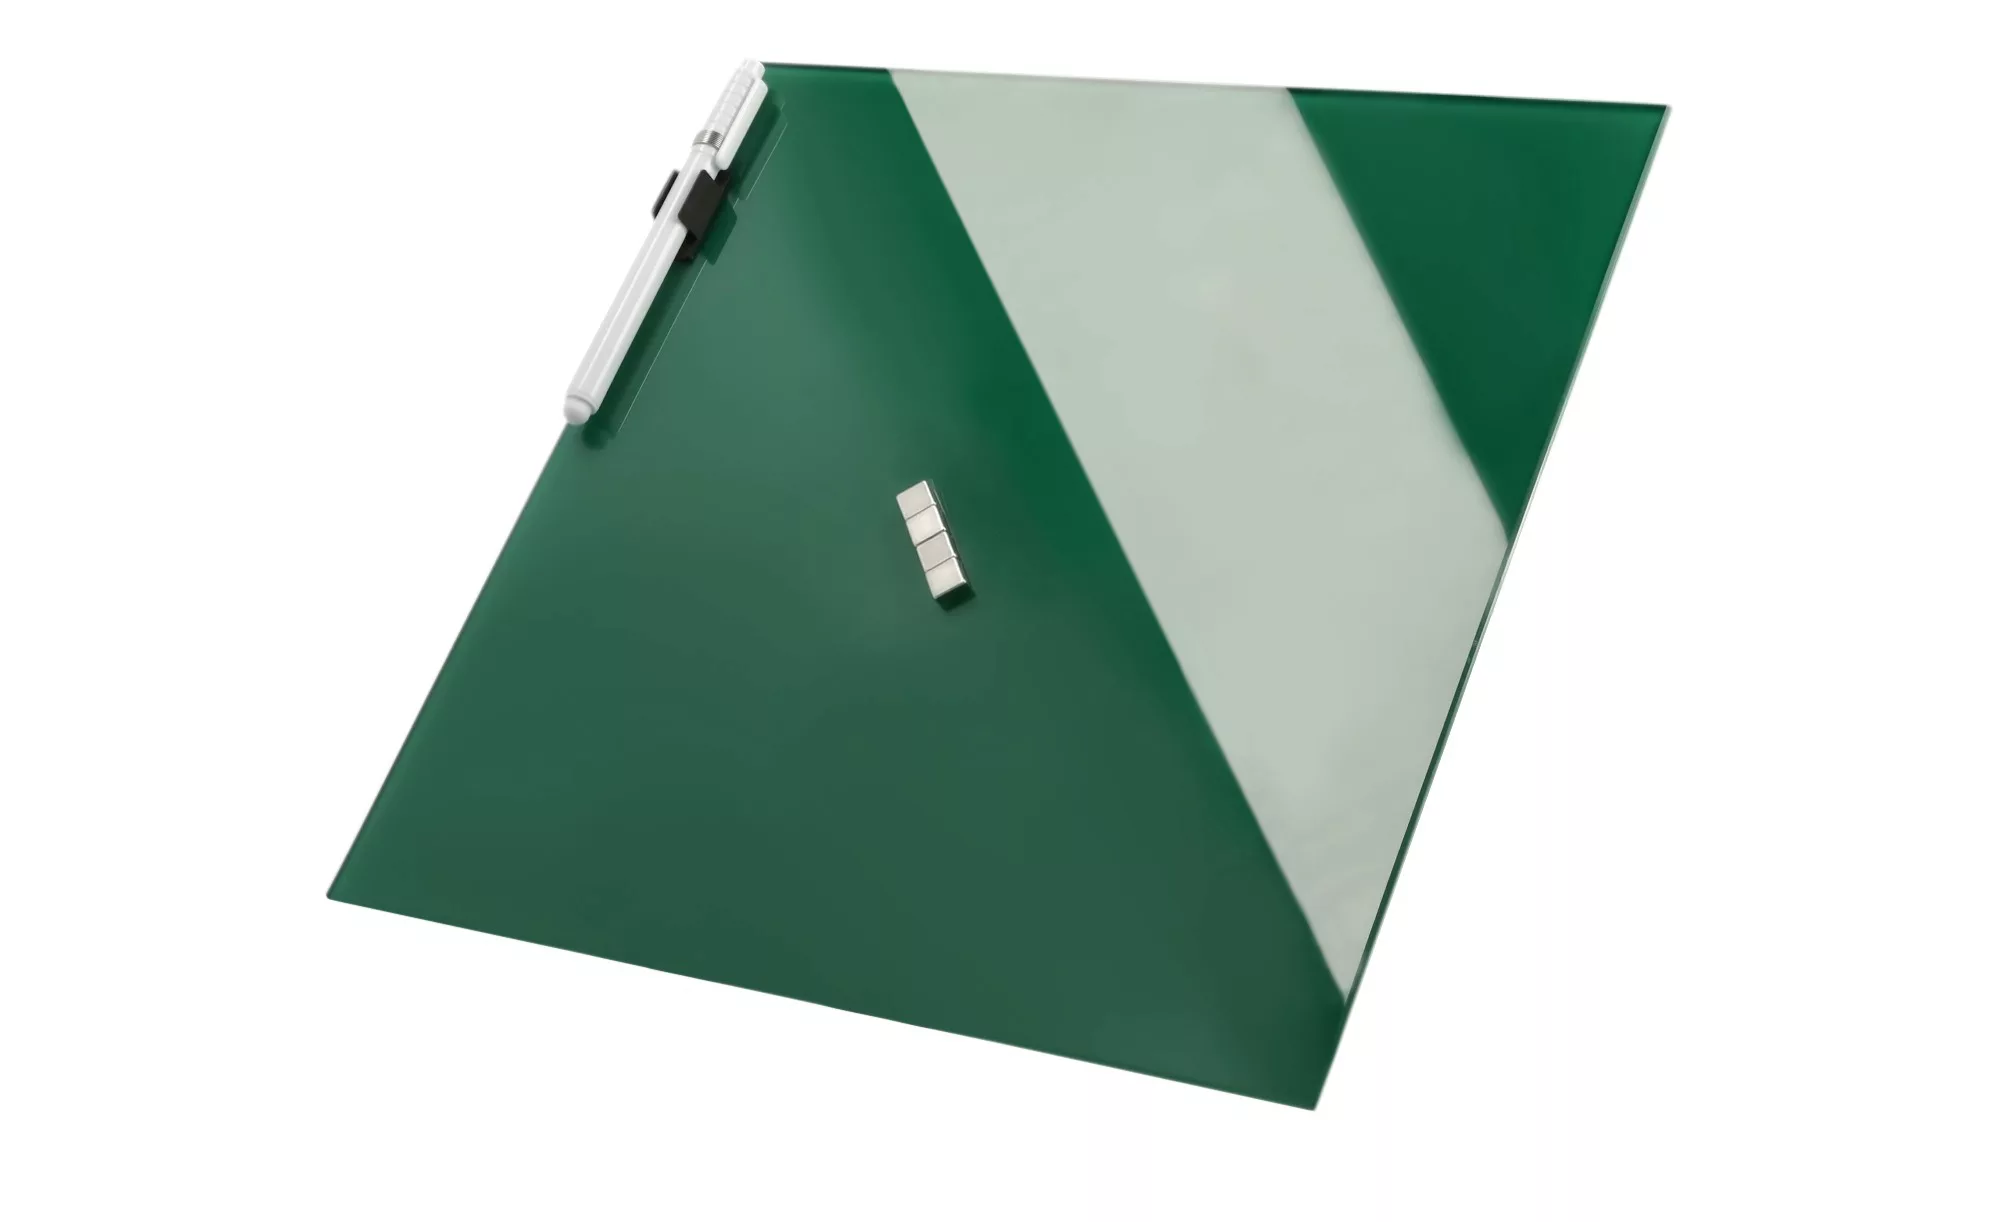 Memoboard 30x30 cm  Tannengrün - grün - 30 cm - 30 cm - Sconto günstig online kaufen